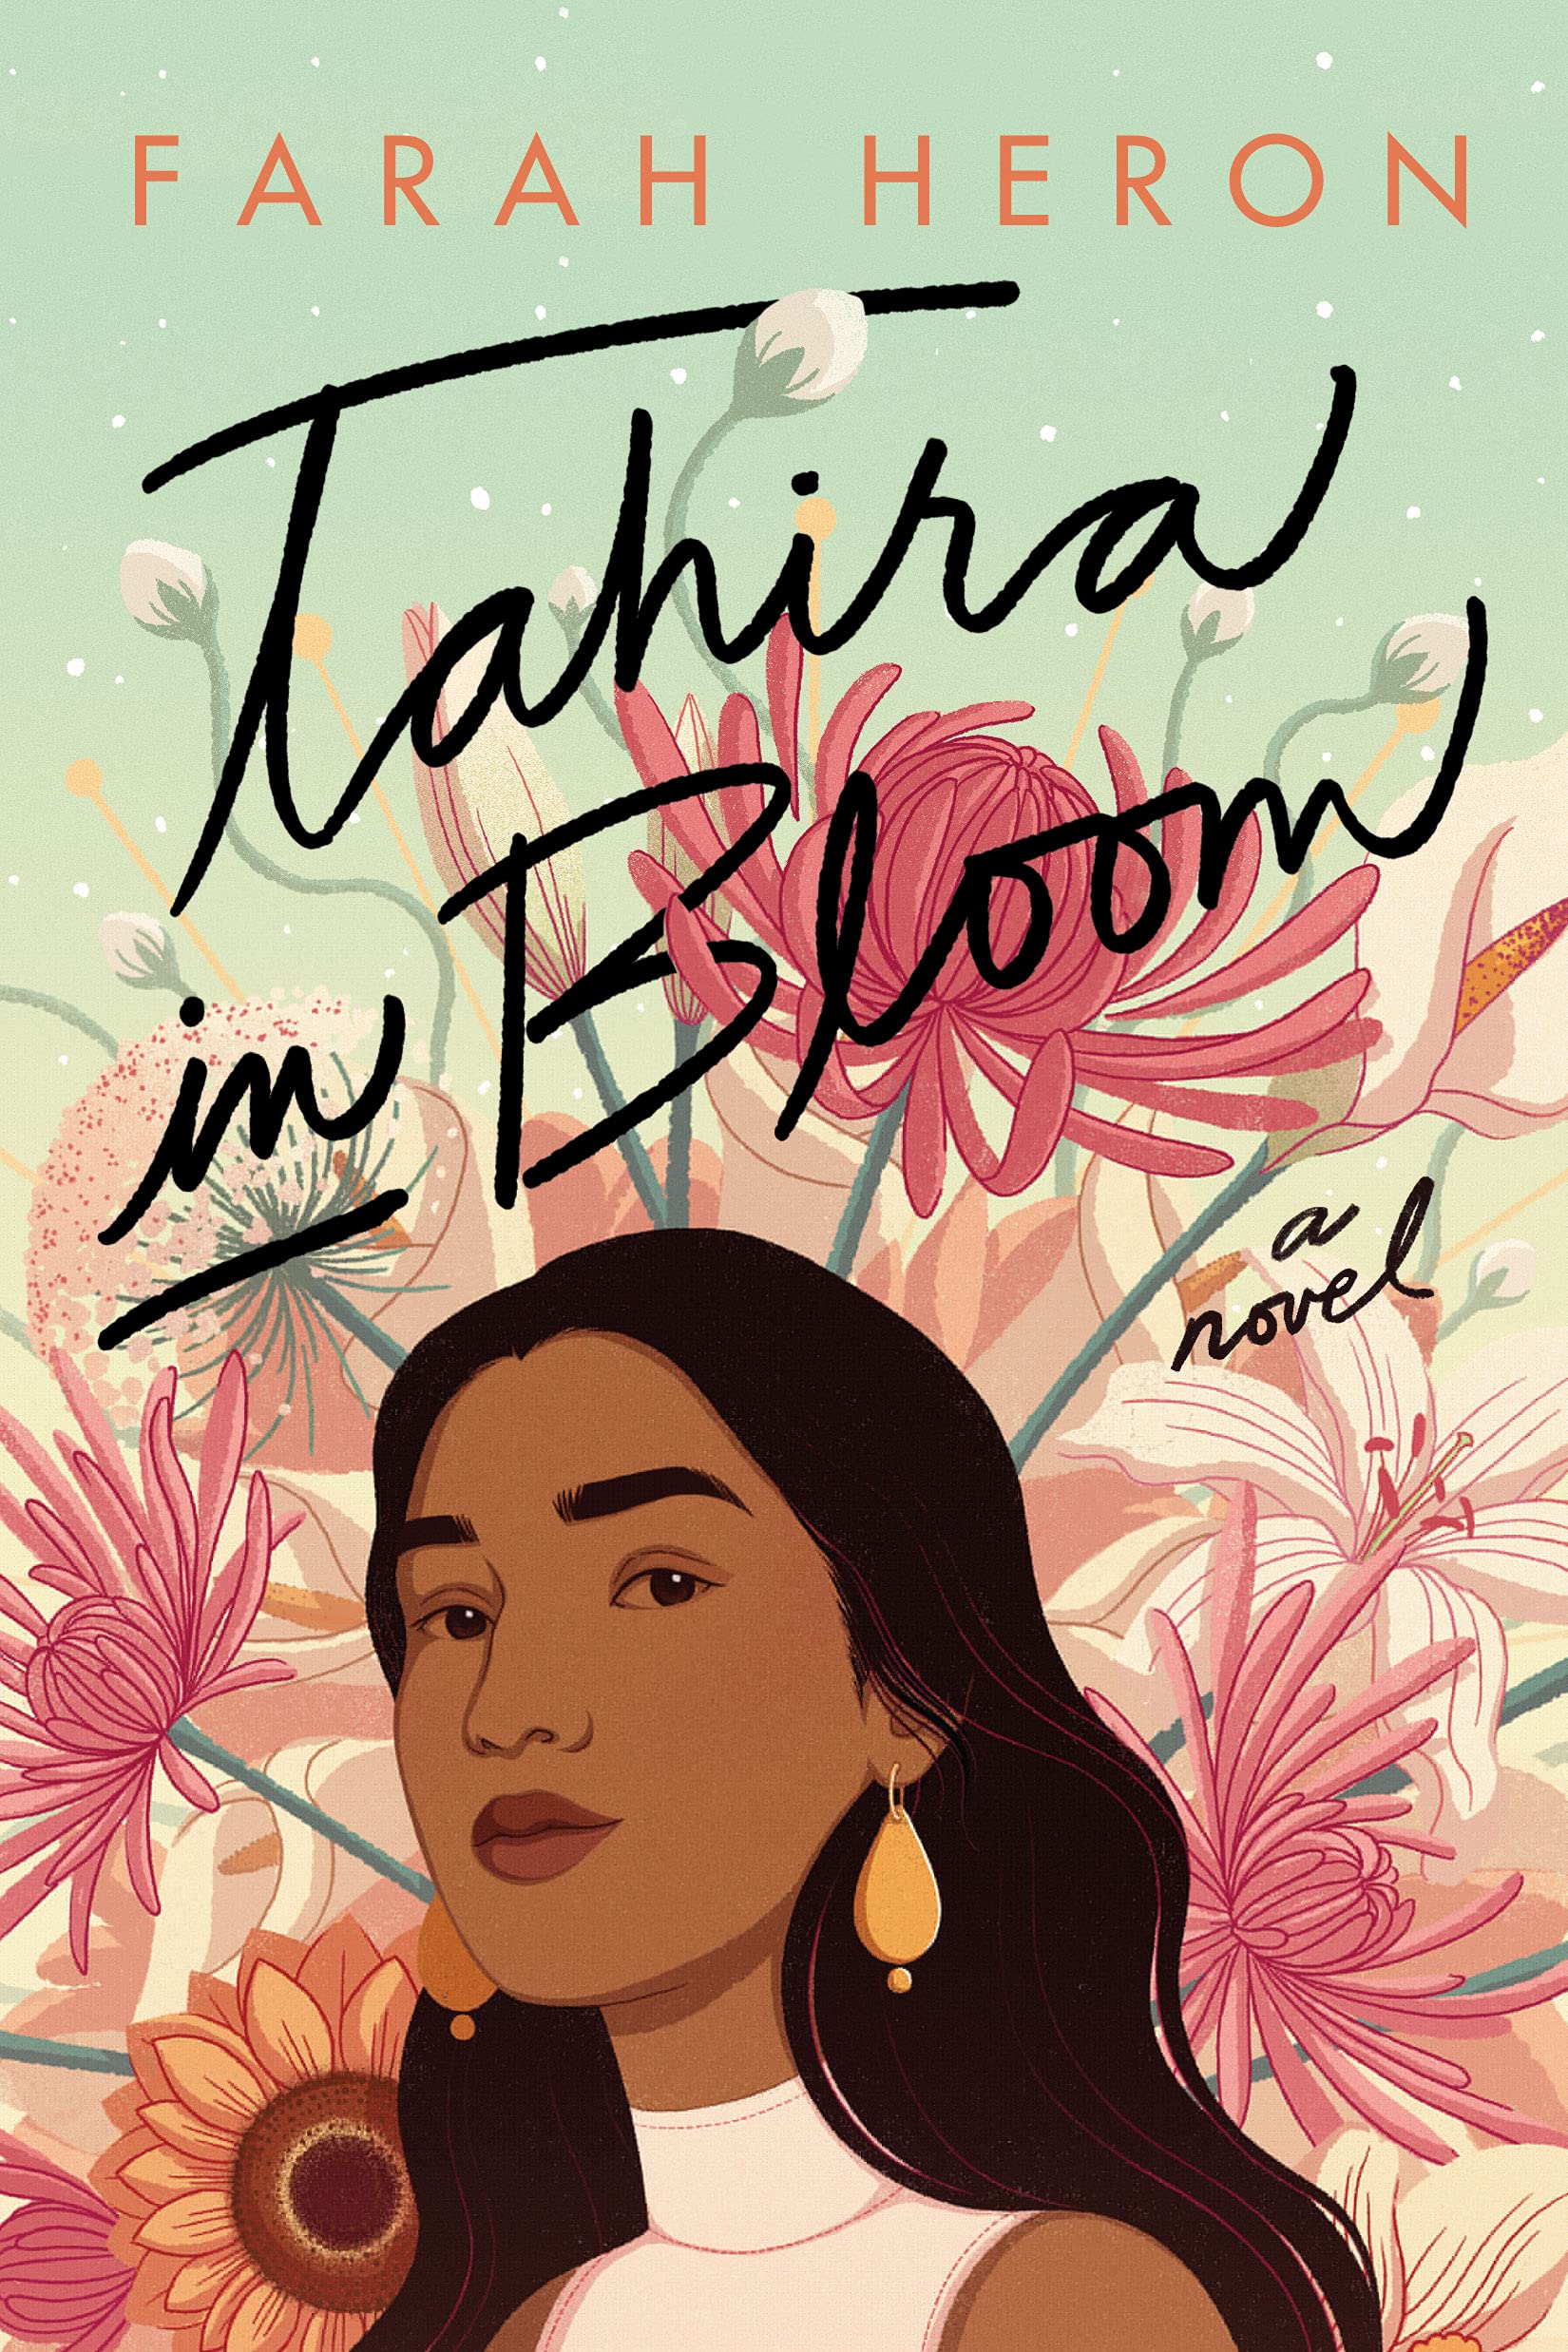 Cover of “Tahira in Bloom” by Farah Heron